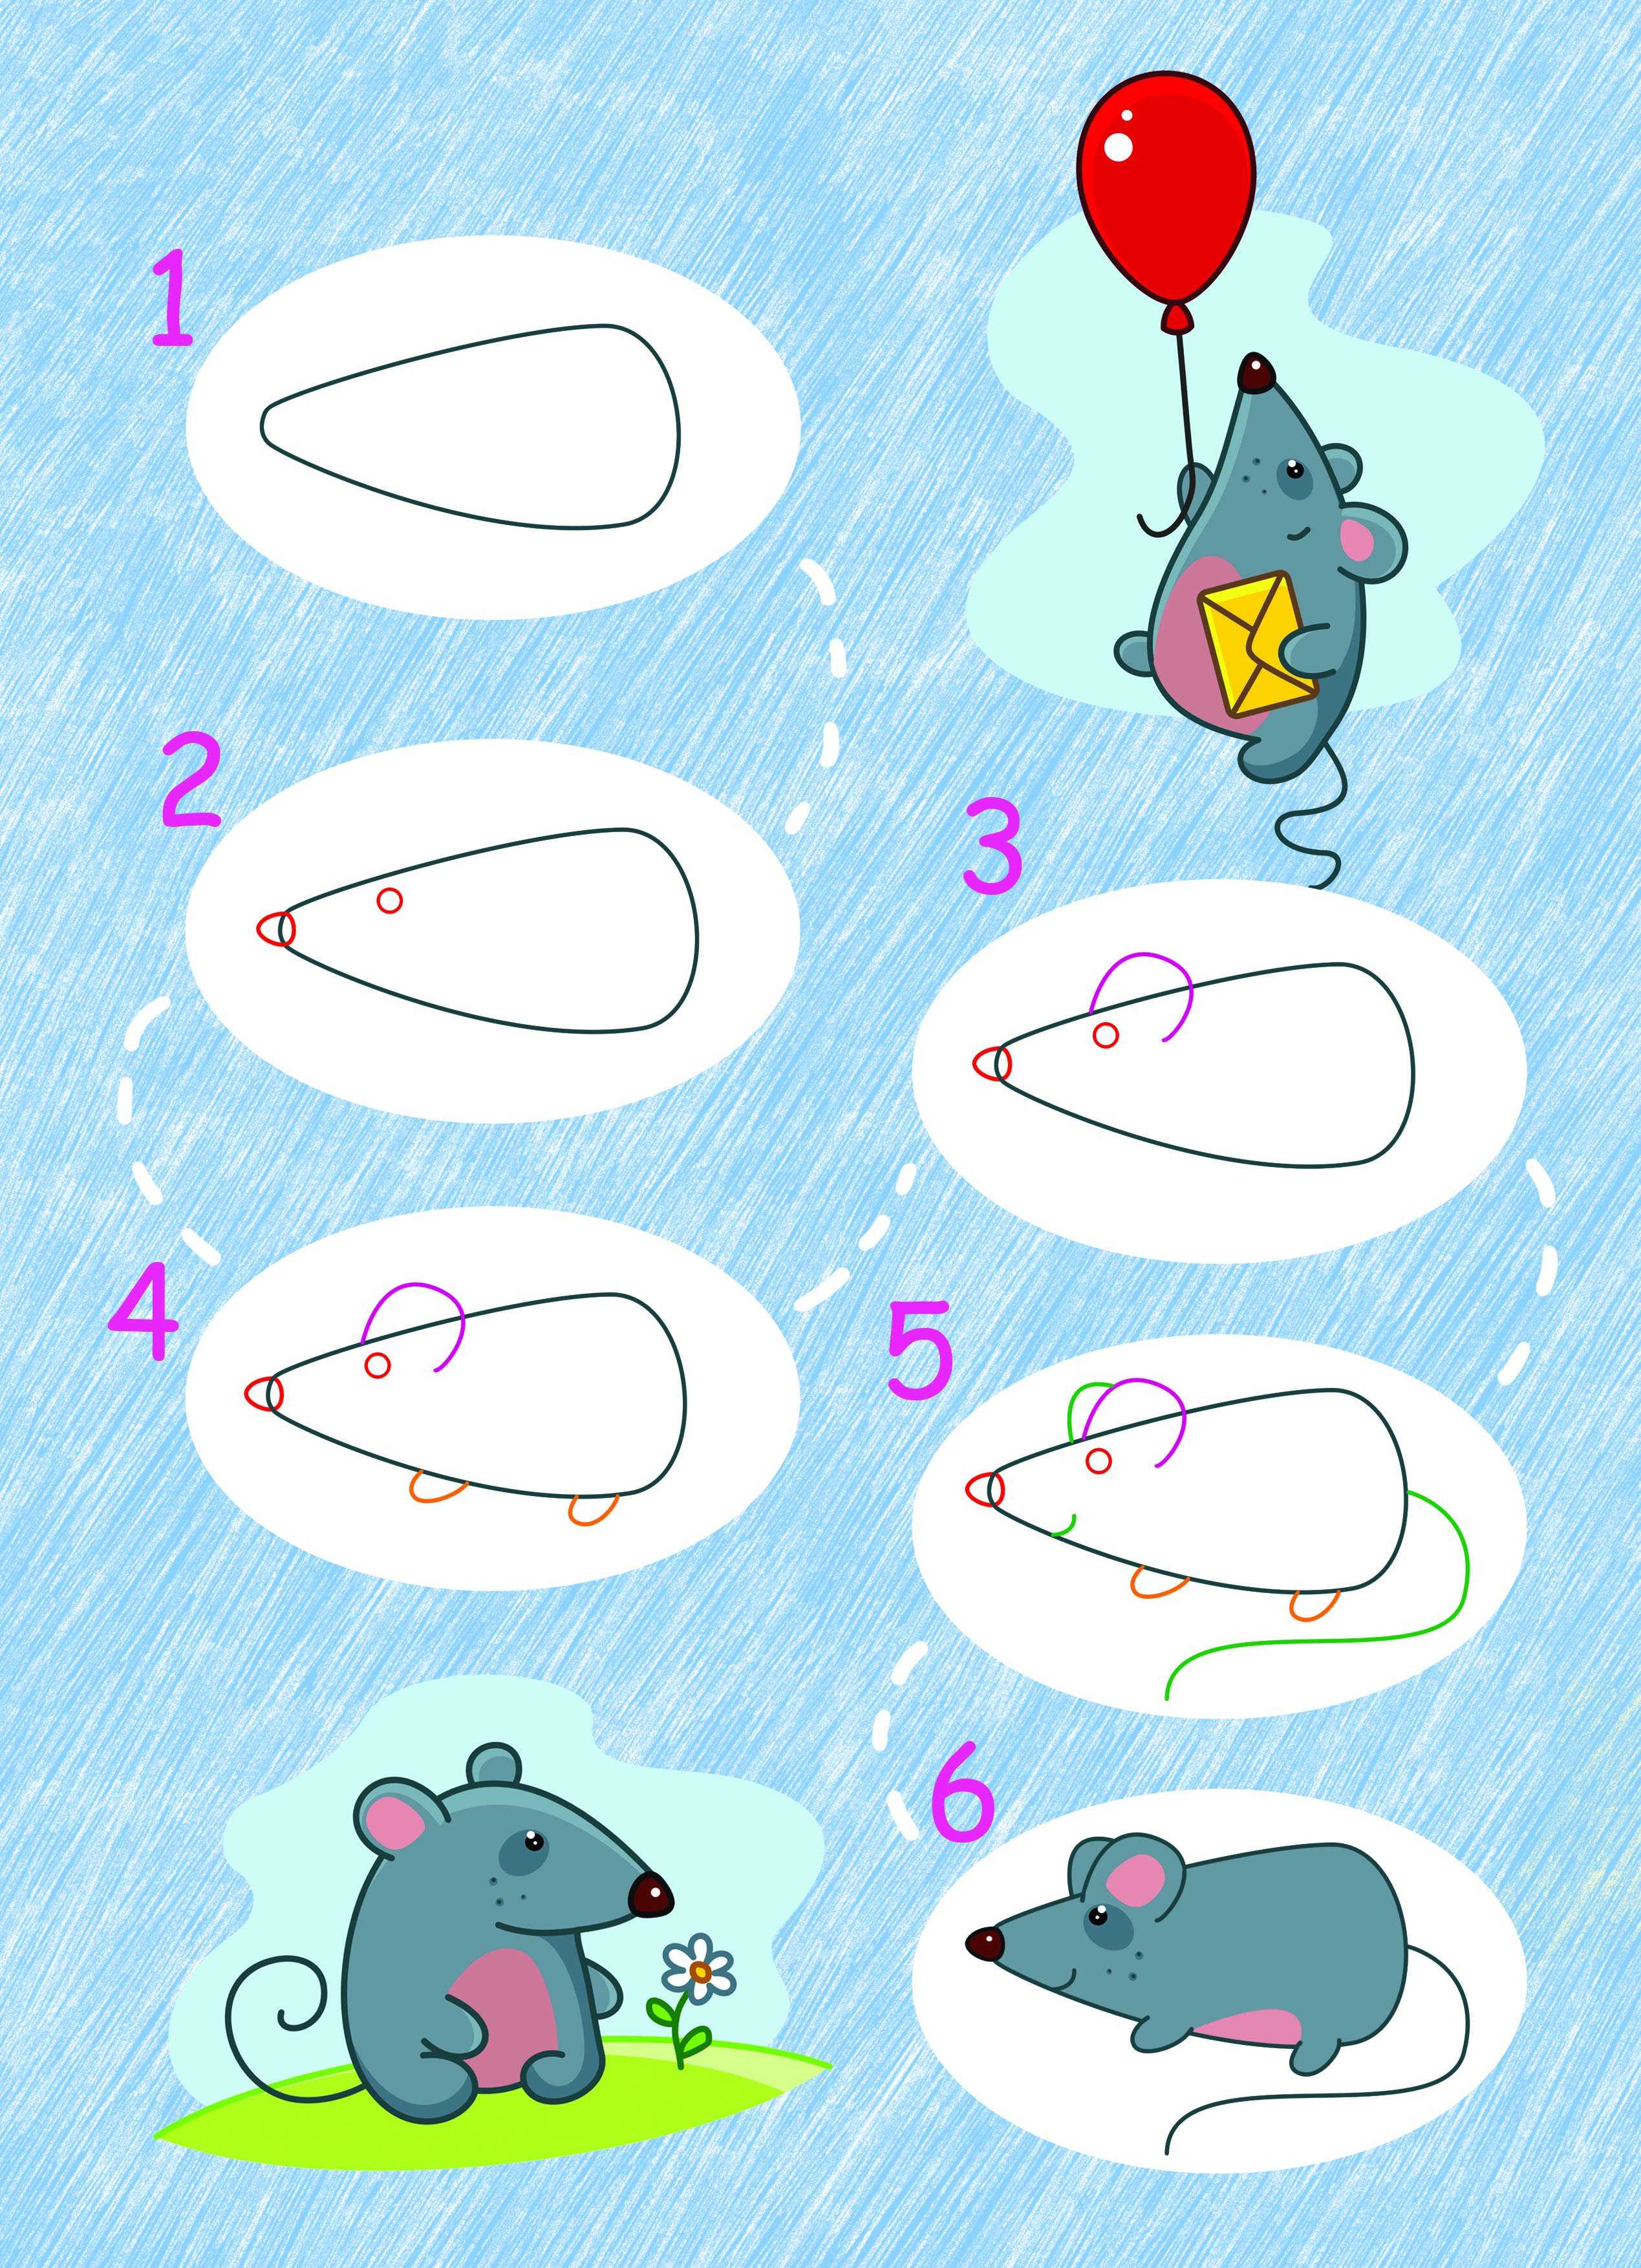 Мышка рисунок для детей поэтапно